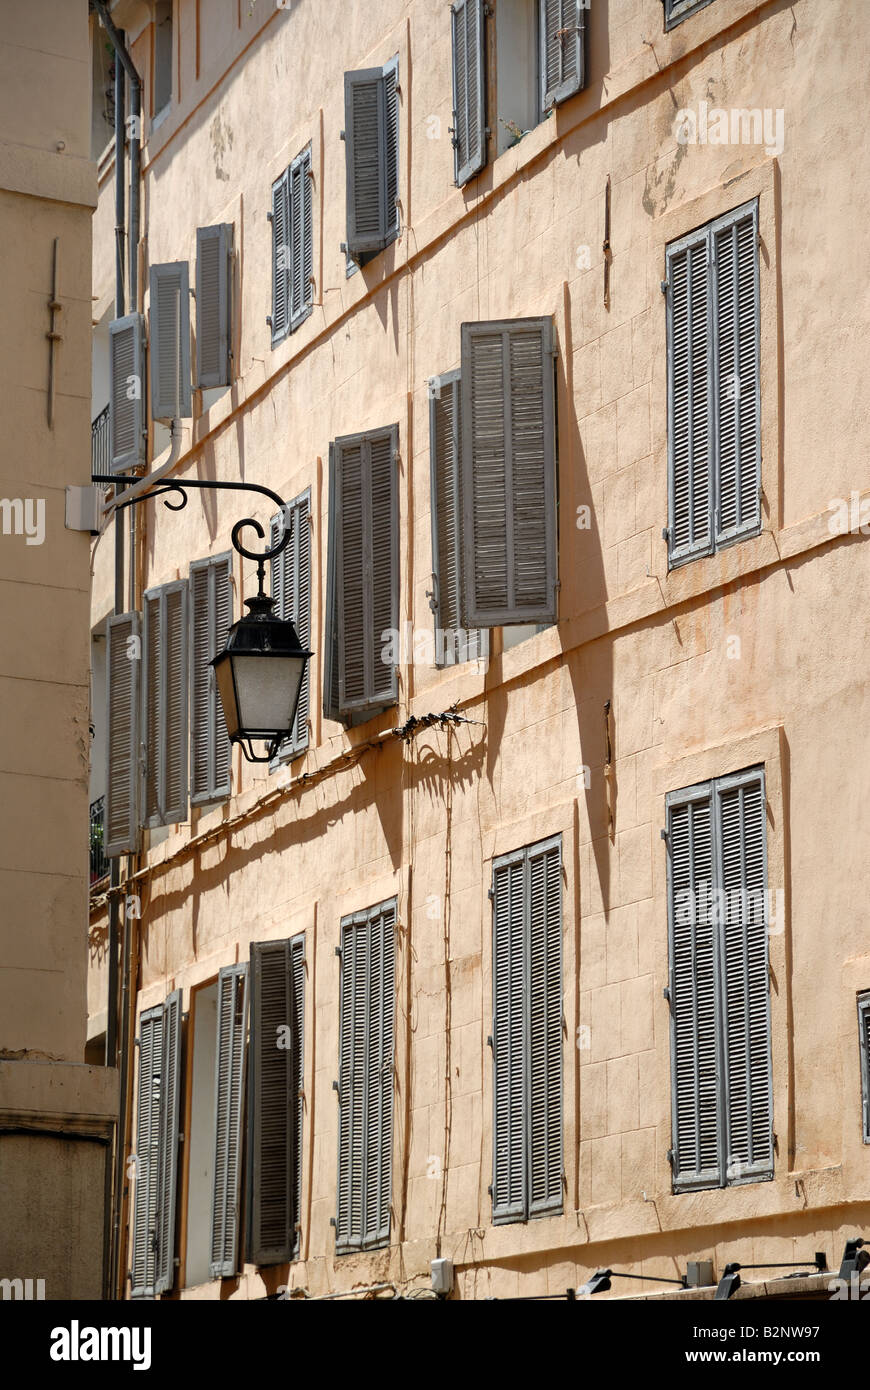 Vieux bâtiment à Aix-en-Provence, France Banque D'Images